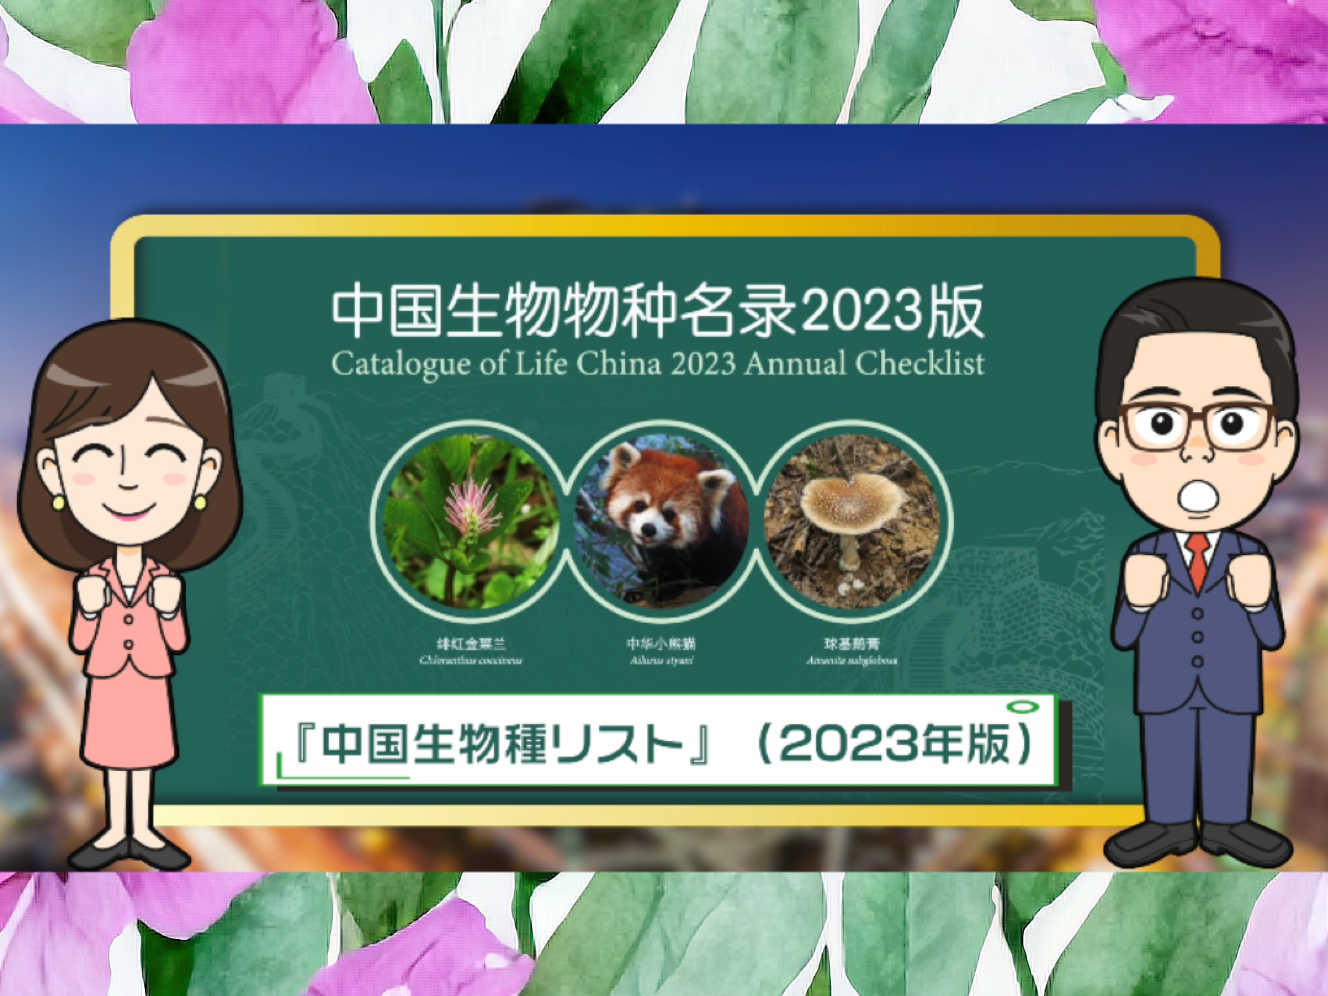 【わかった気になっチャイナ】きみも中国の生き物博士になろう！ 14万8千種収録の『中国生物種リスト』が無料公開中